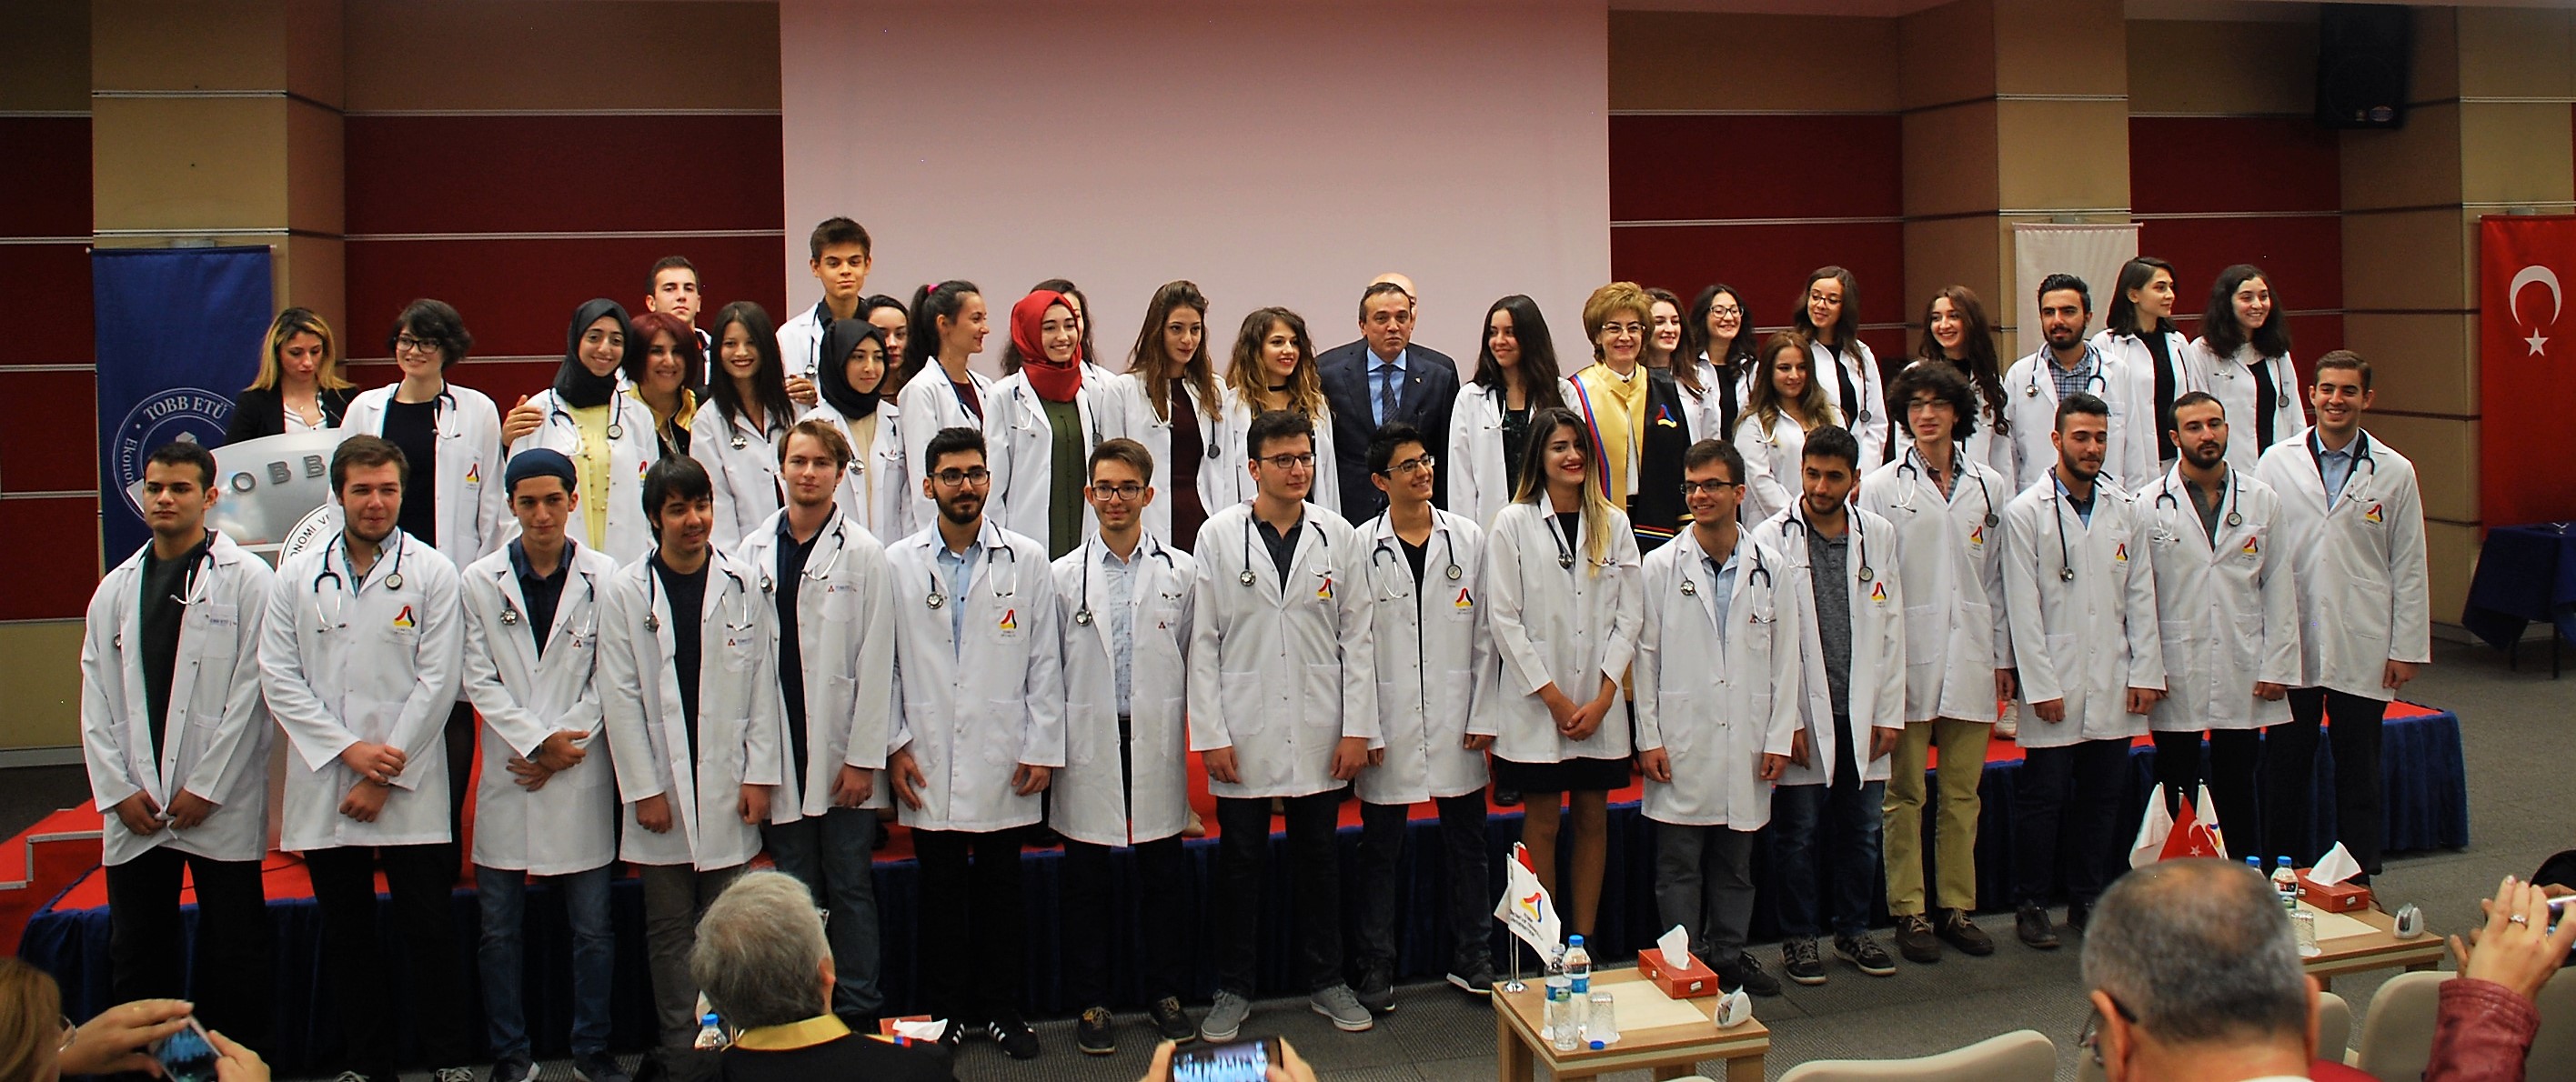 TOBB ETÜ Tıp Fakültesi, 2017 - 2018 Akademik Yılı Girişli Öğrencilerine Beyaz Önlük Töreniyle Merhaba Dedi